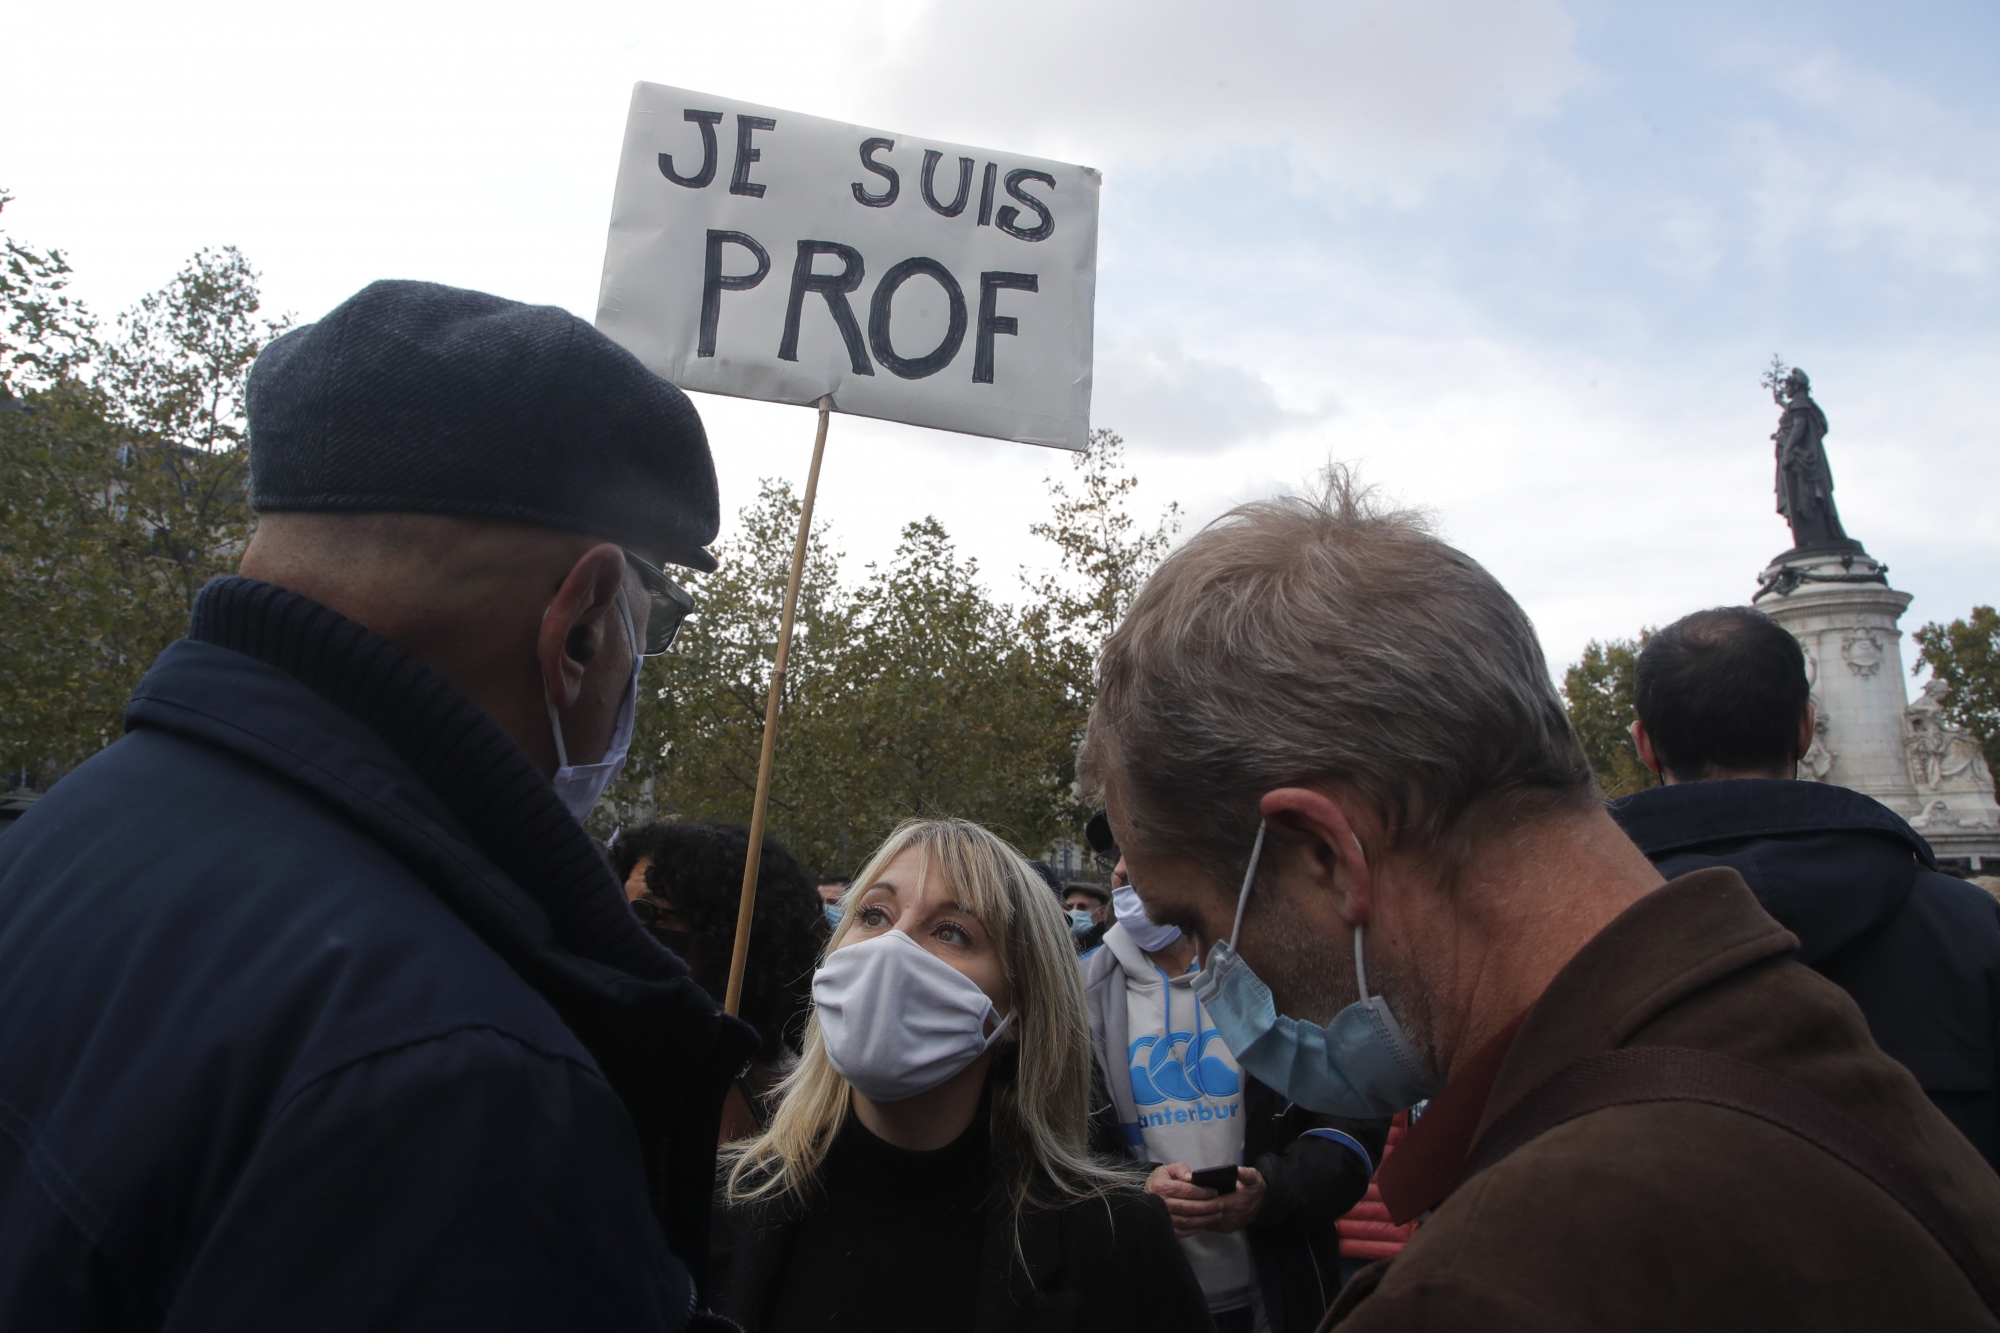 La vague d'émotion provoquée par l'assassinat du professeur a poussé la France dans la rue, pour des marches blanches, comme ici à Paris, dimanche dernier.